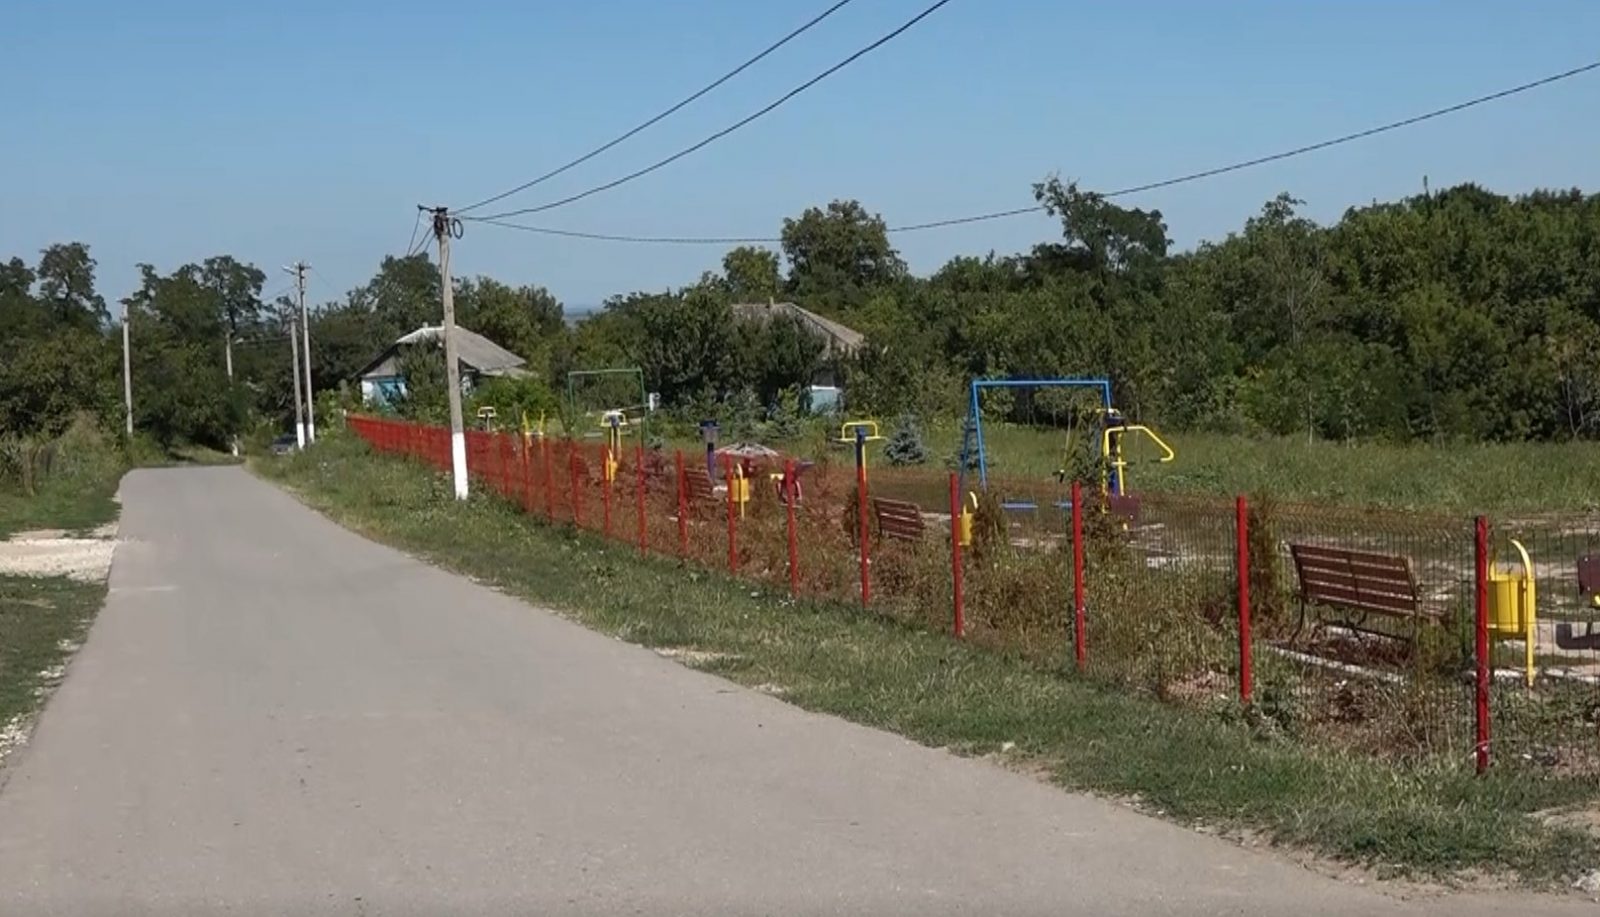 /VIDEO/ Râpa din satul Băxani, raionul Soroca, s-a transformat într-un parc